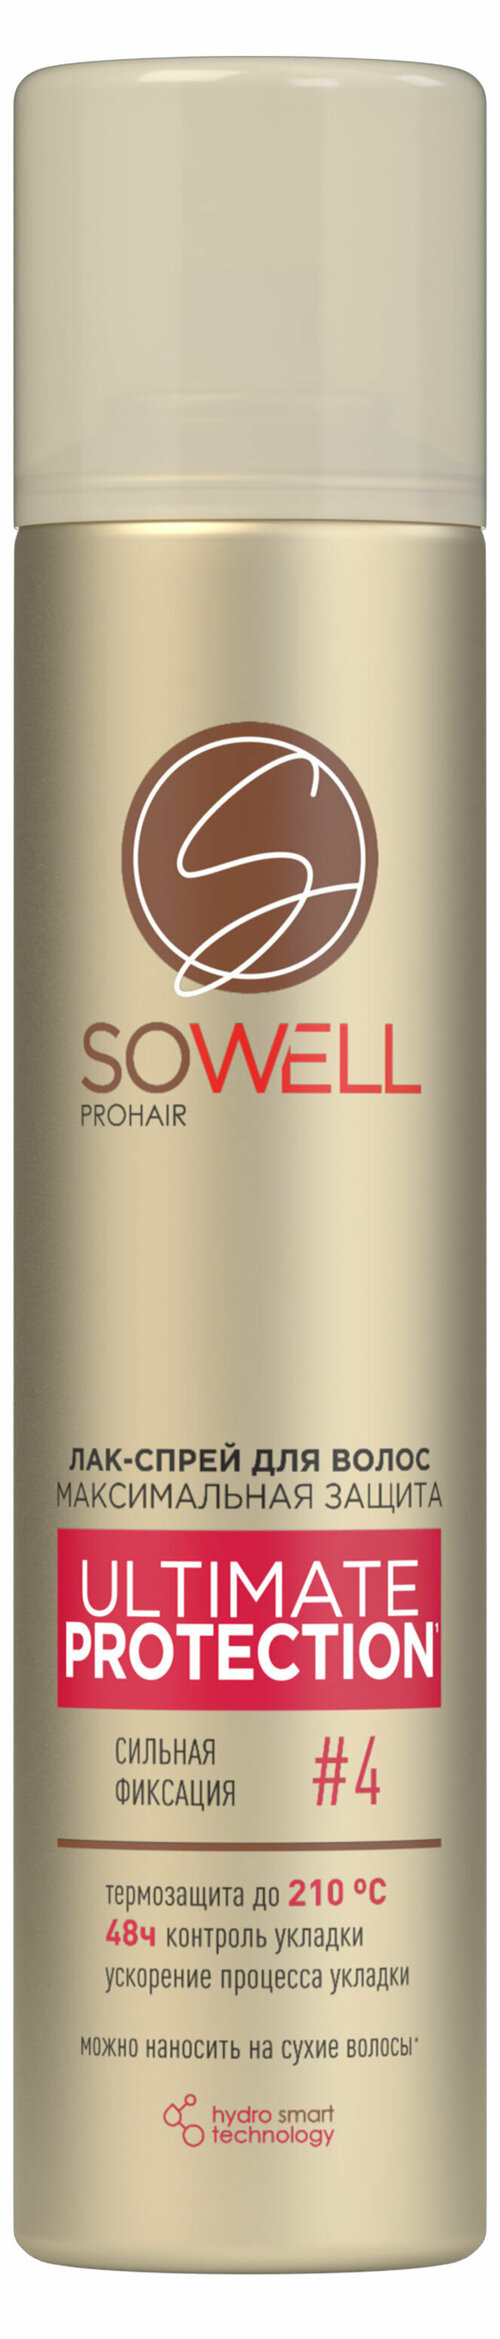 Лак-спрей для волос SoWell Ultimate Protection максимальная защита и идеальная укладка сильной фиксации, 300 мл